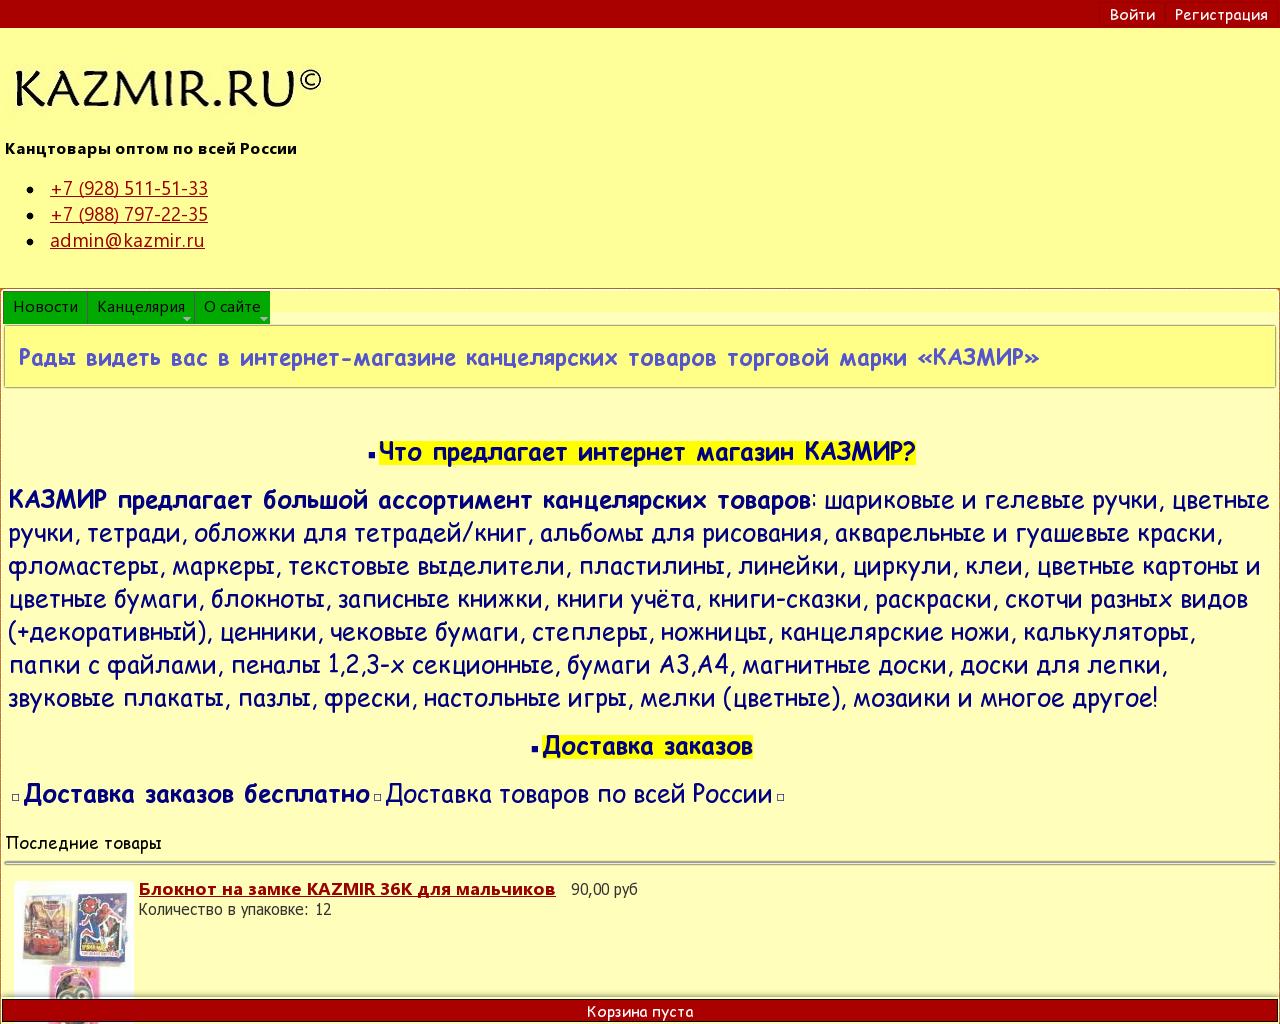 Изображение сайта kazmir.ru в разрешении 1280x1024